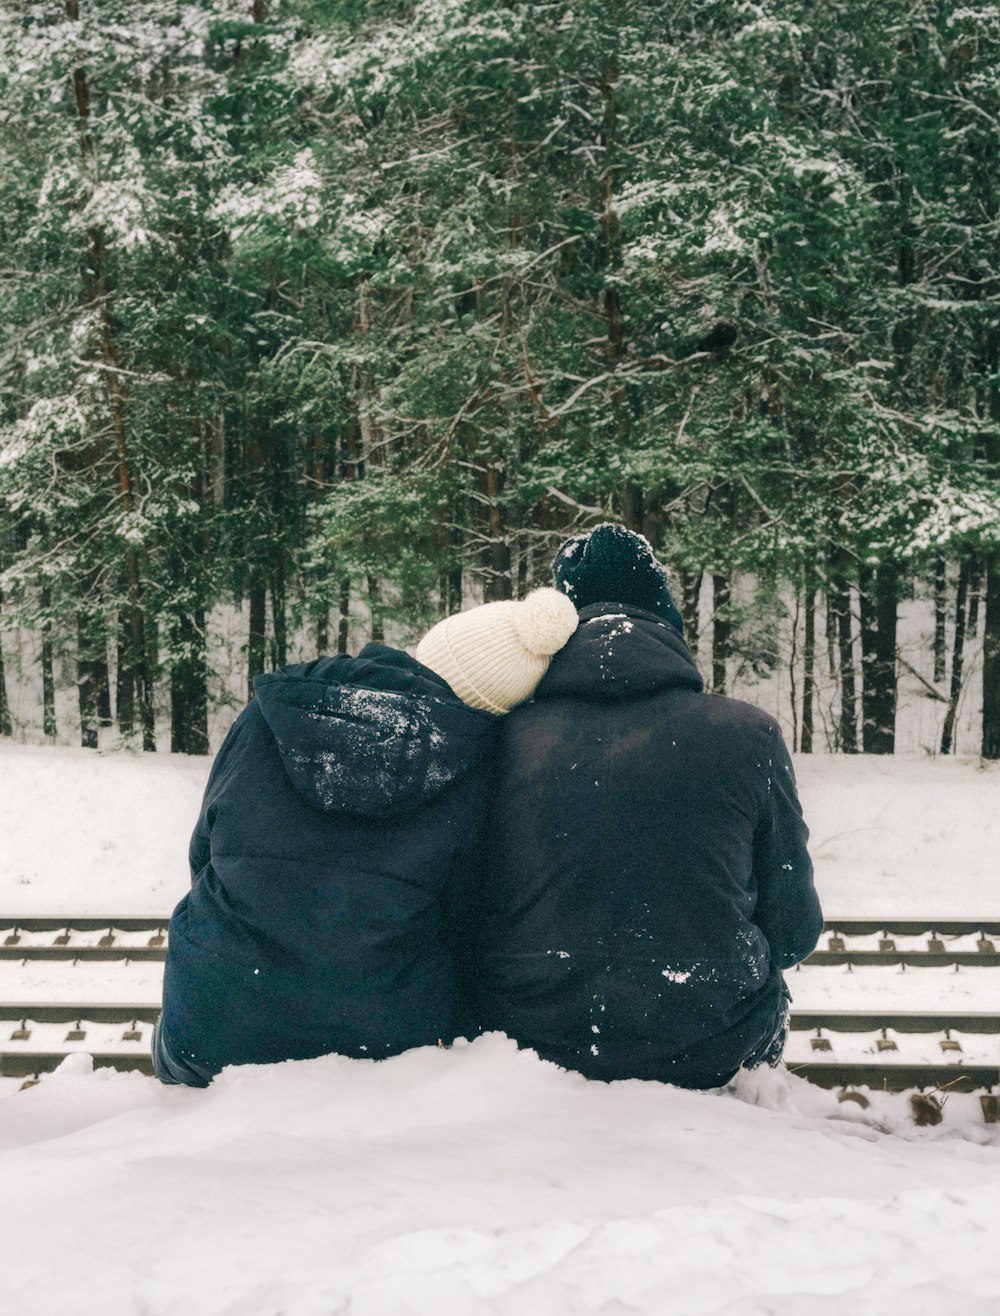 duas pessoas sentadas em um banco na neve